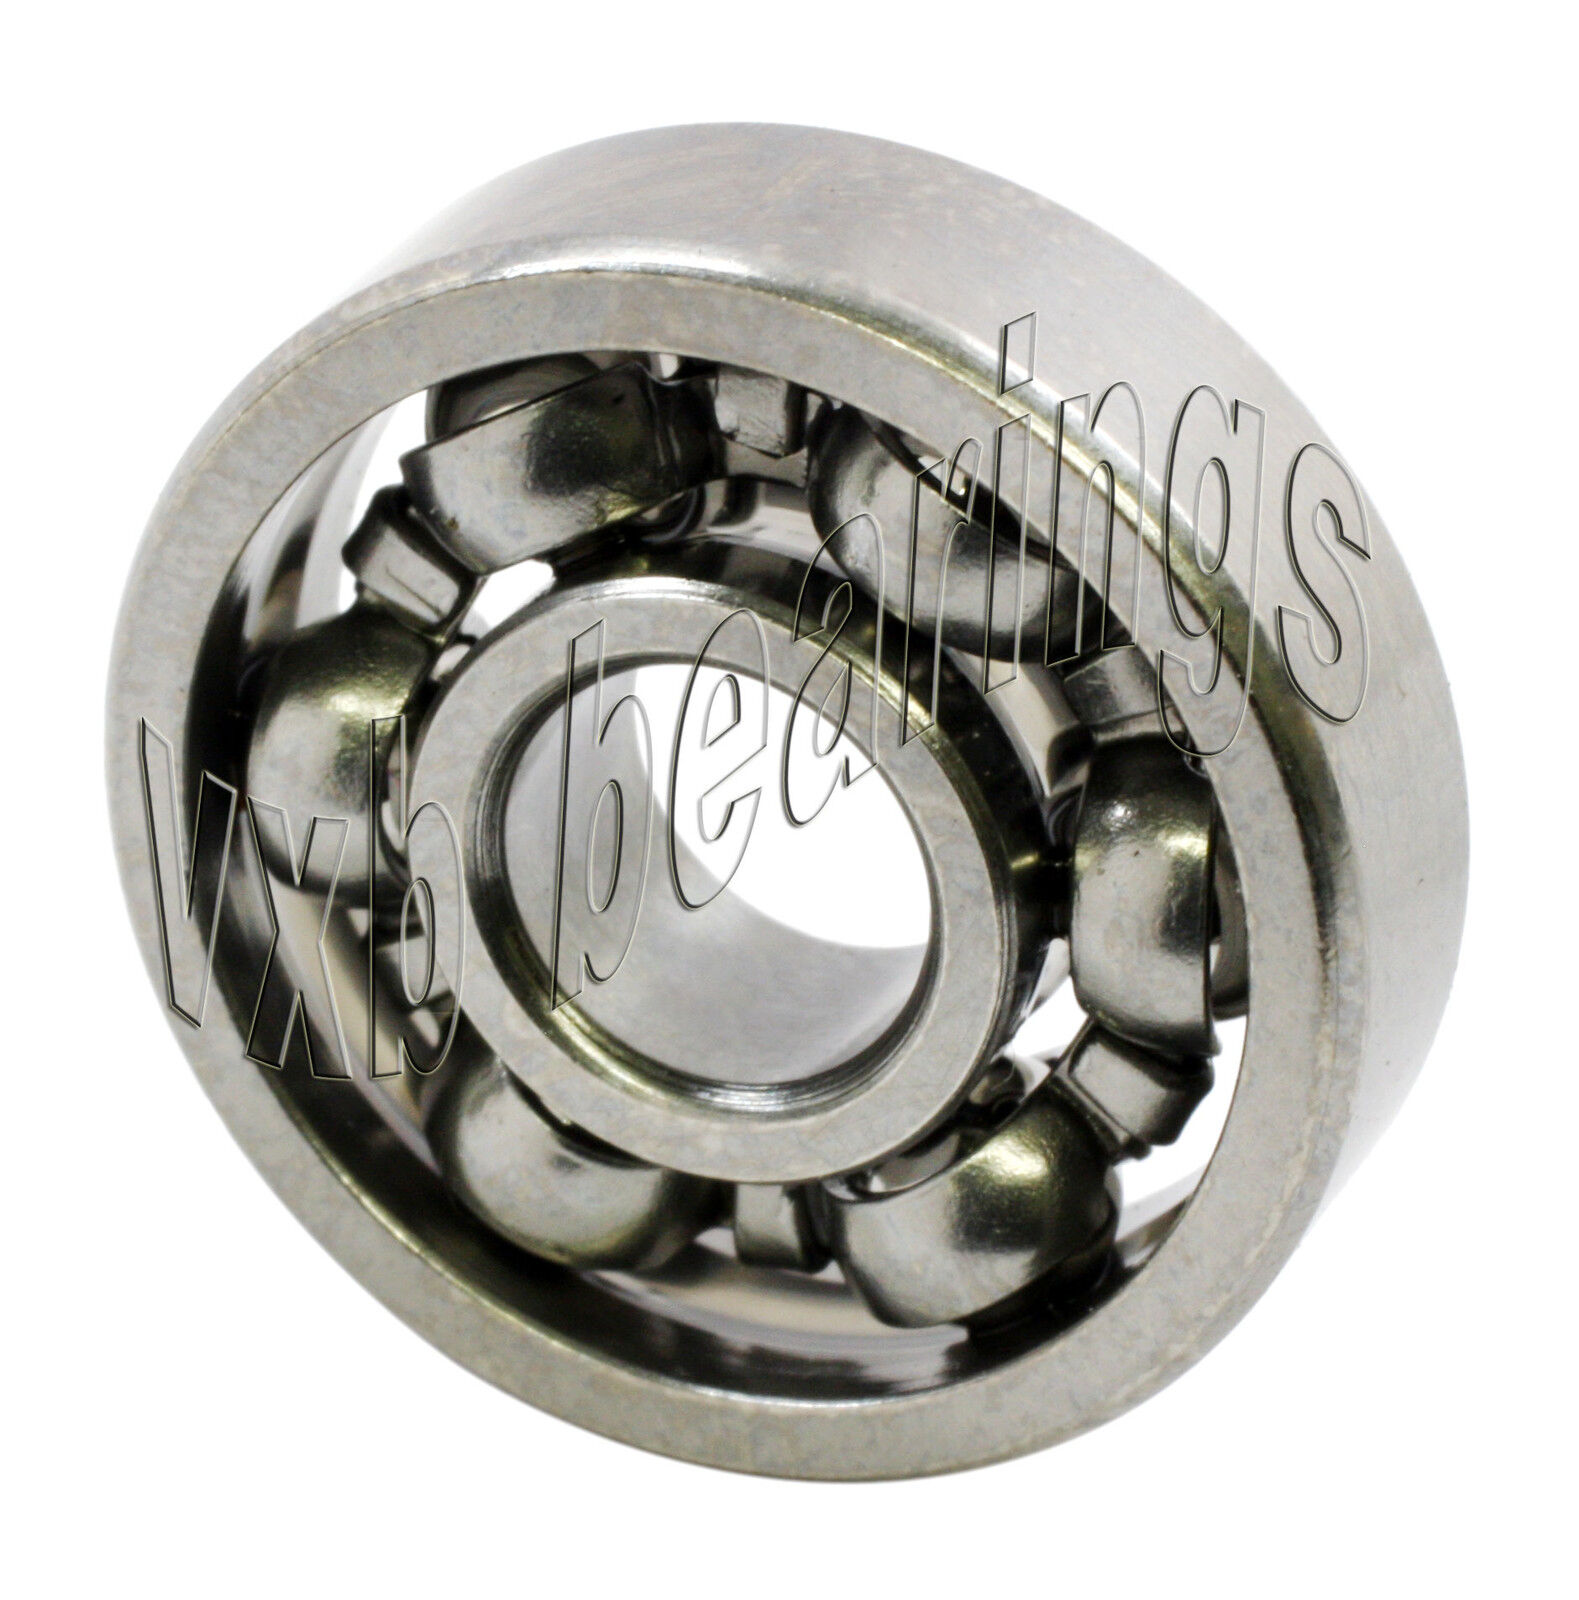 10 S681 Open 1x3x1 1mm//3mm//1mm Stainless Miniature Steel Ball Ball Bearings